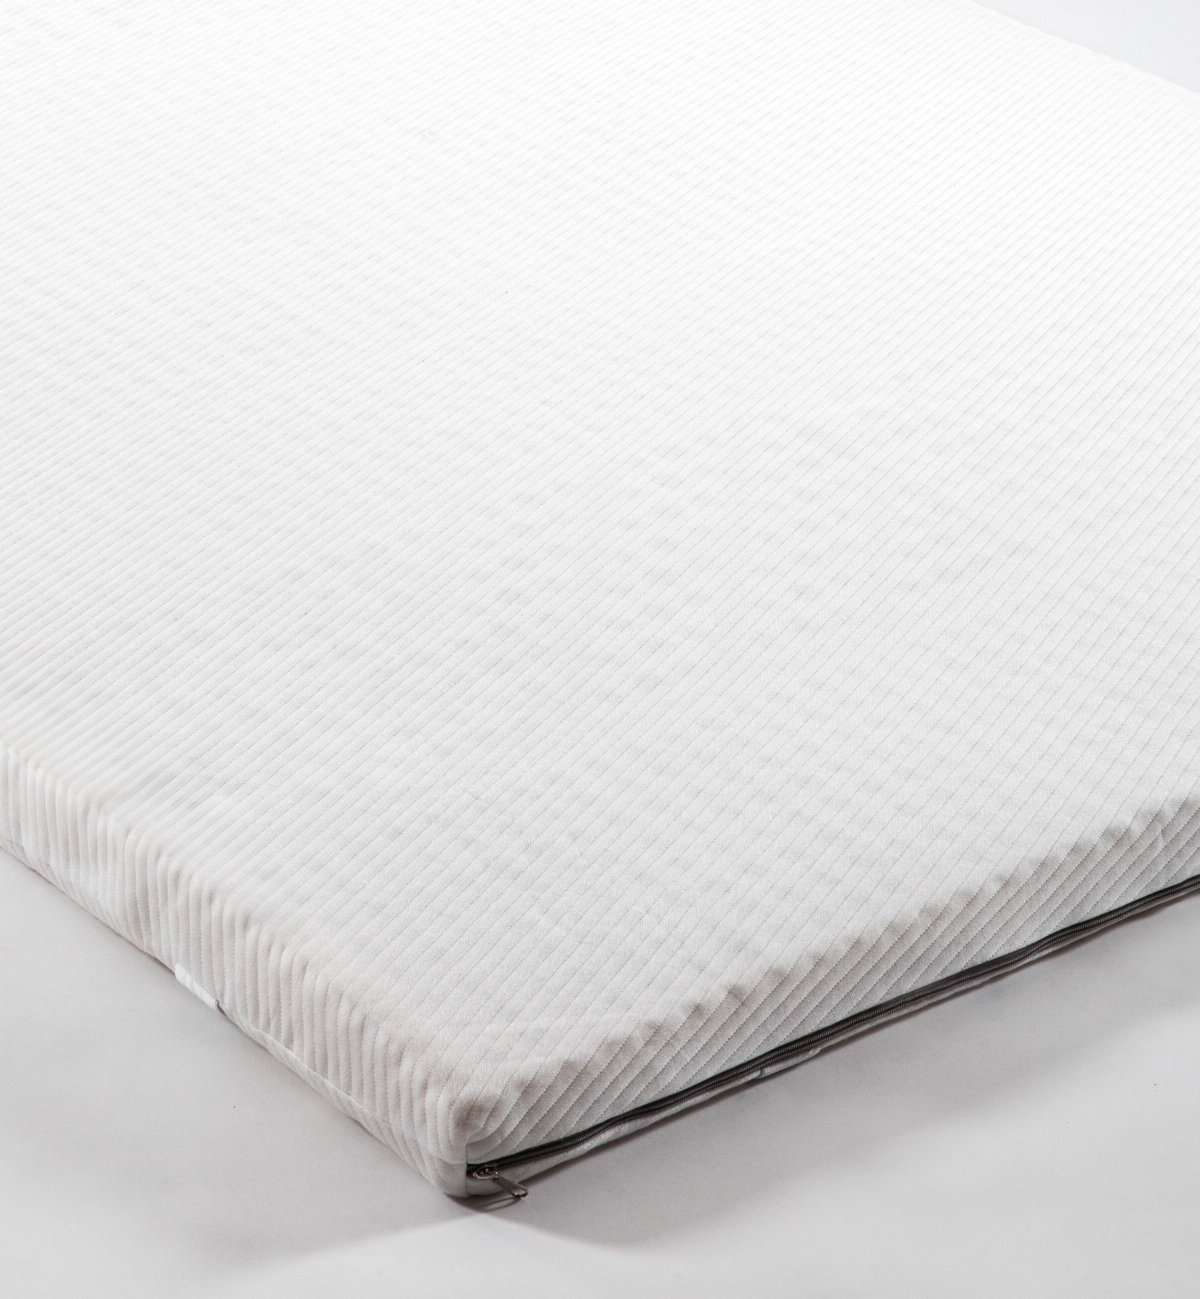 Natuurlijke latex matras topper voor tweepersoonsbedden, een ideale oplossing om het comfort van je matras te verhogen